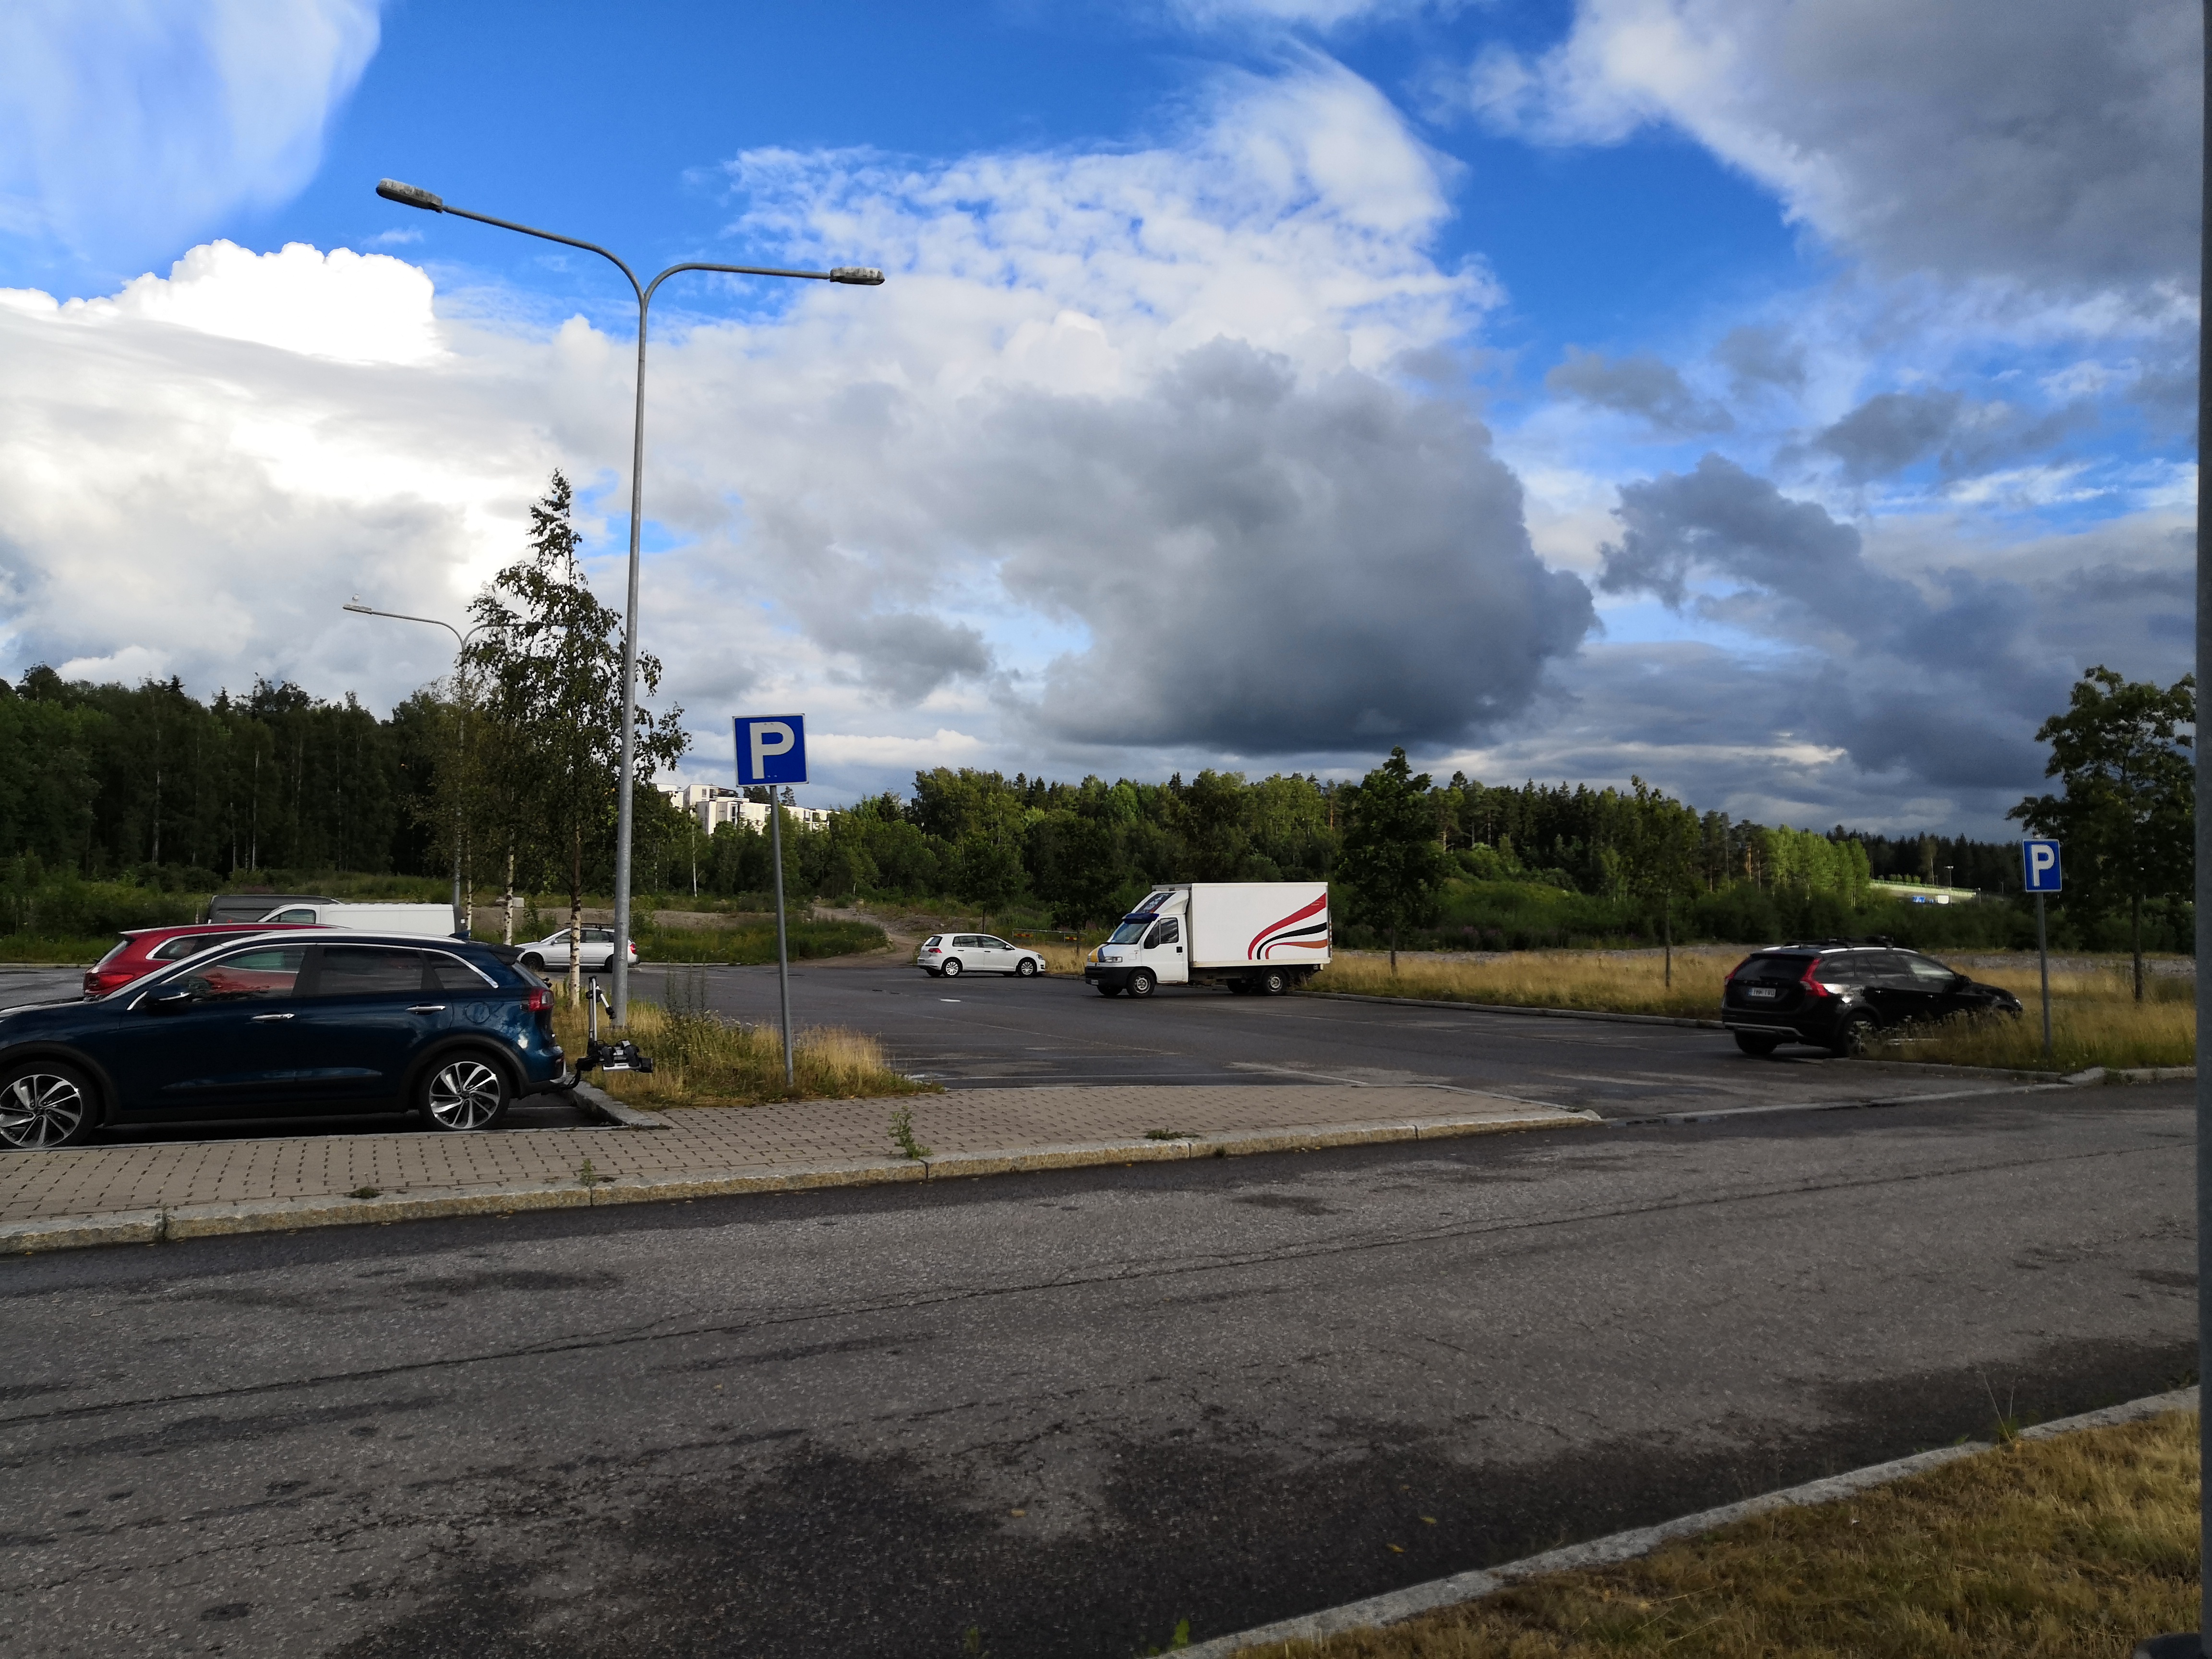 Paukkulanpuisto. Taustalla näkyy Kivikonlaidan teollisuusaluetta. Puiston alueella on sijainnut puolustusvoimien rakentama Malmin ampumarata, joka valmistui vuonna 1937 Helsingissä järjestettyihin ammunnan MM-kisoihin, ja suljettiin vuonna 1993. rephoto